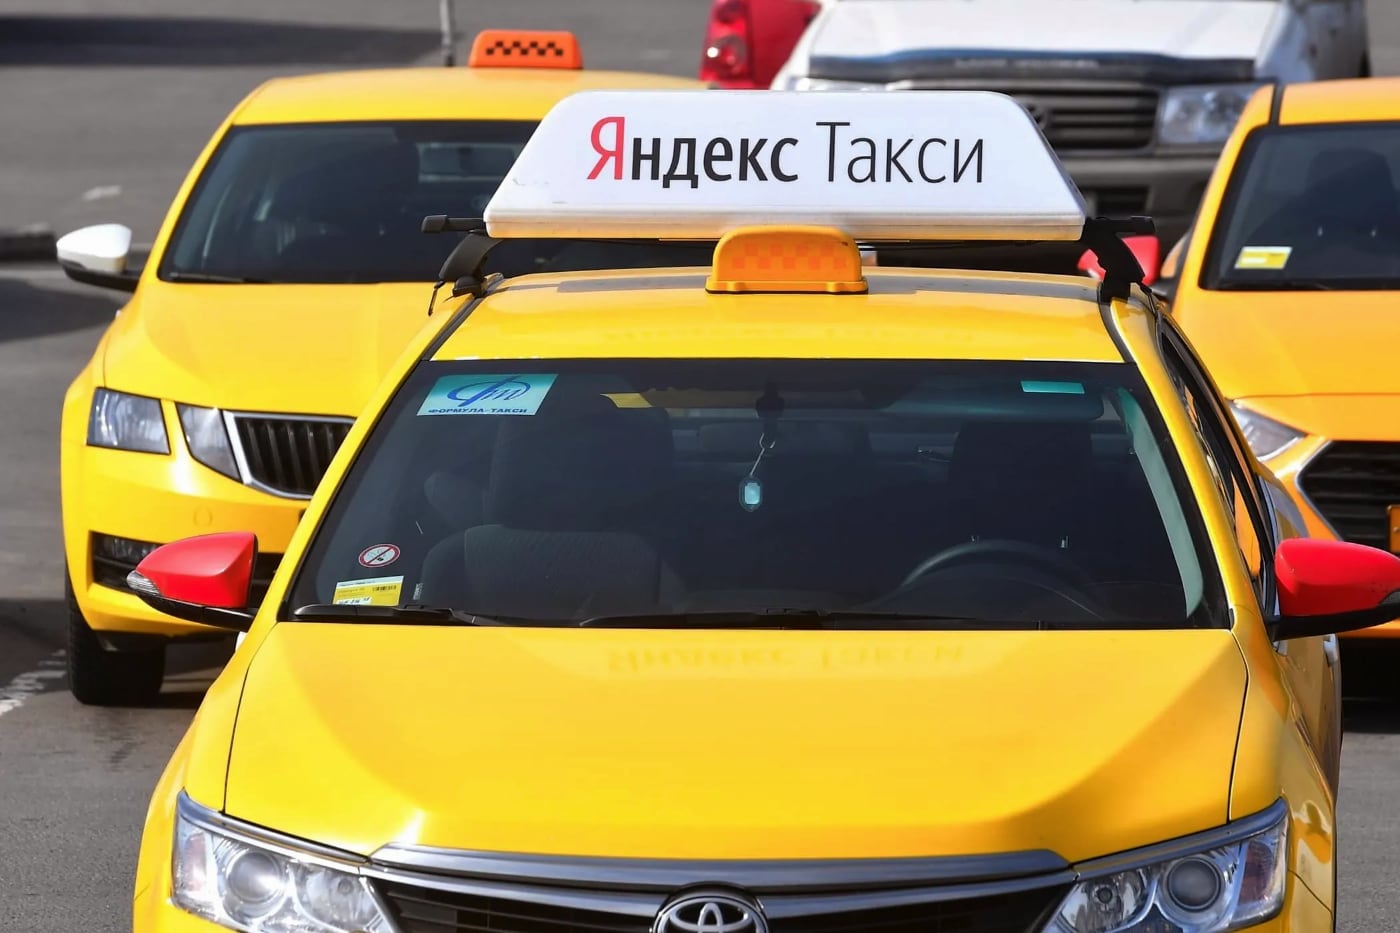 Яндекс оспорит решение о блокировке Яндекс.Такси в Латвии из-за вопроса хранения данных